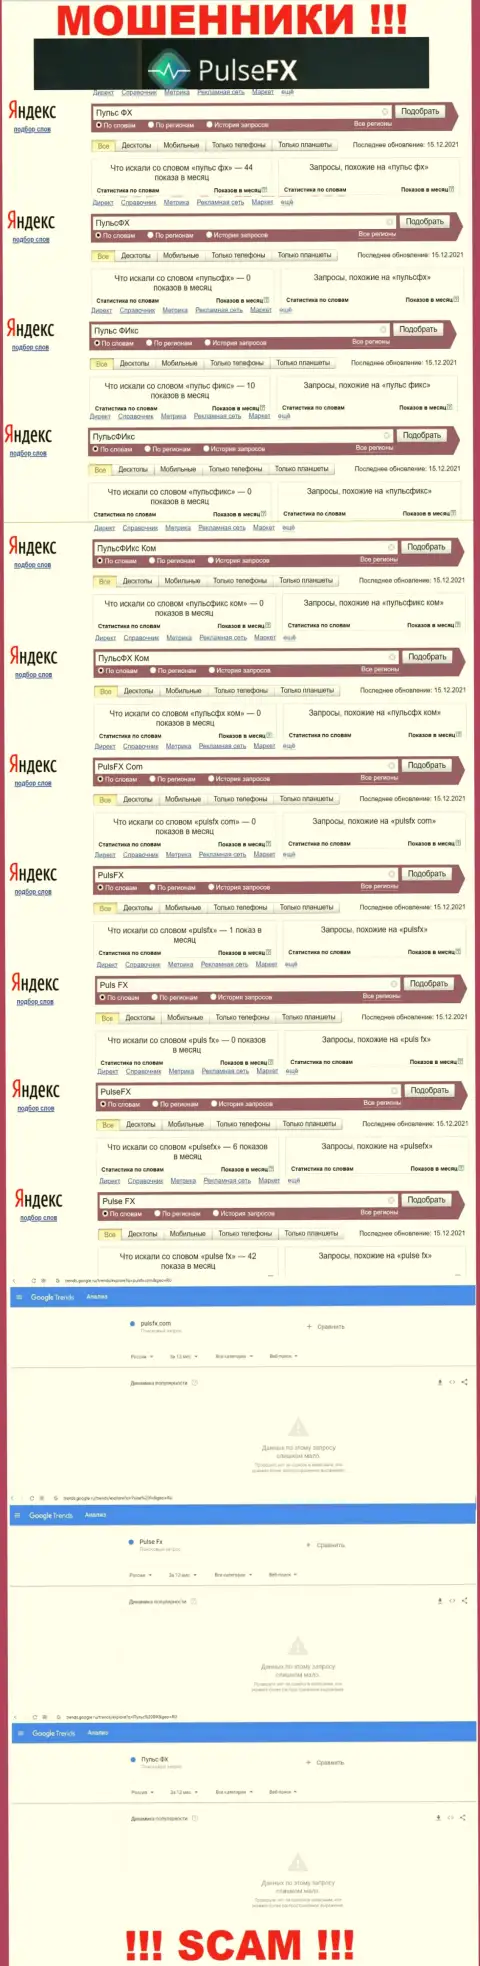 Количество онлайн-запросов в глобальной интернет сети по бренду лохотронщиков PulseFX